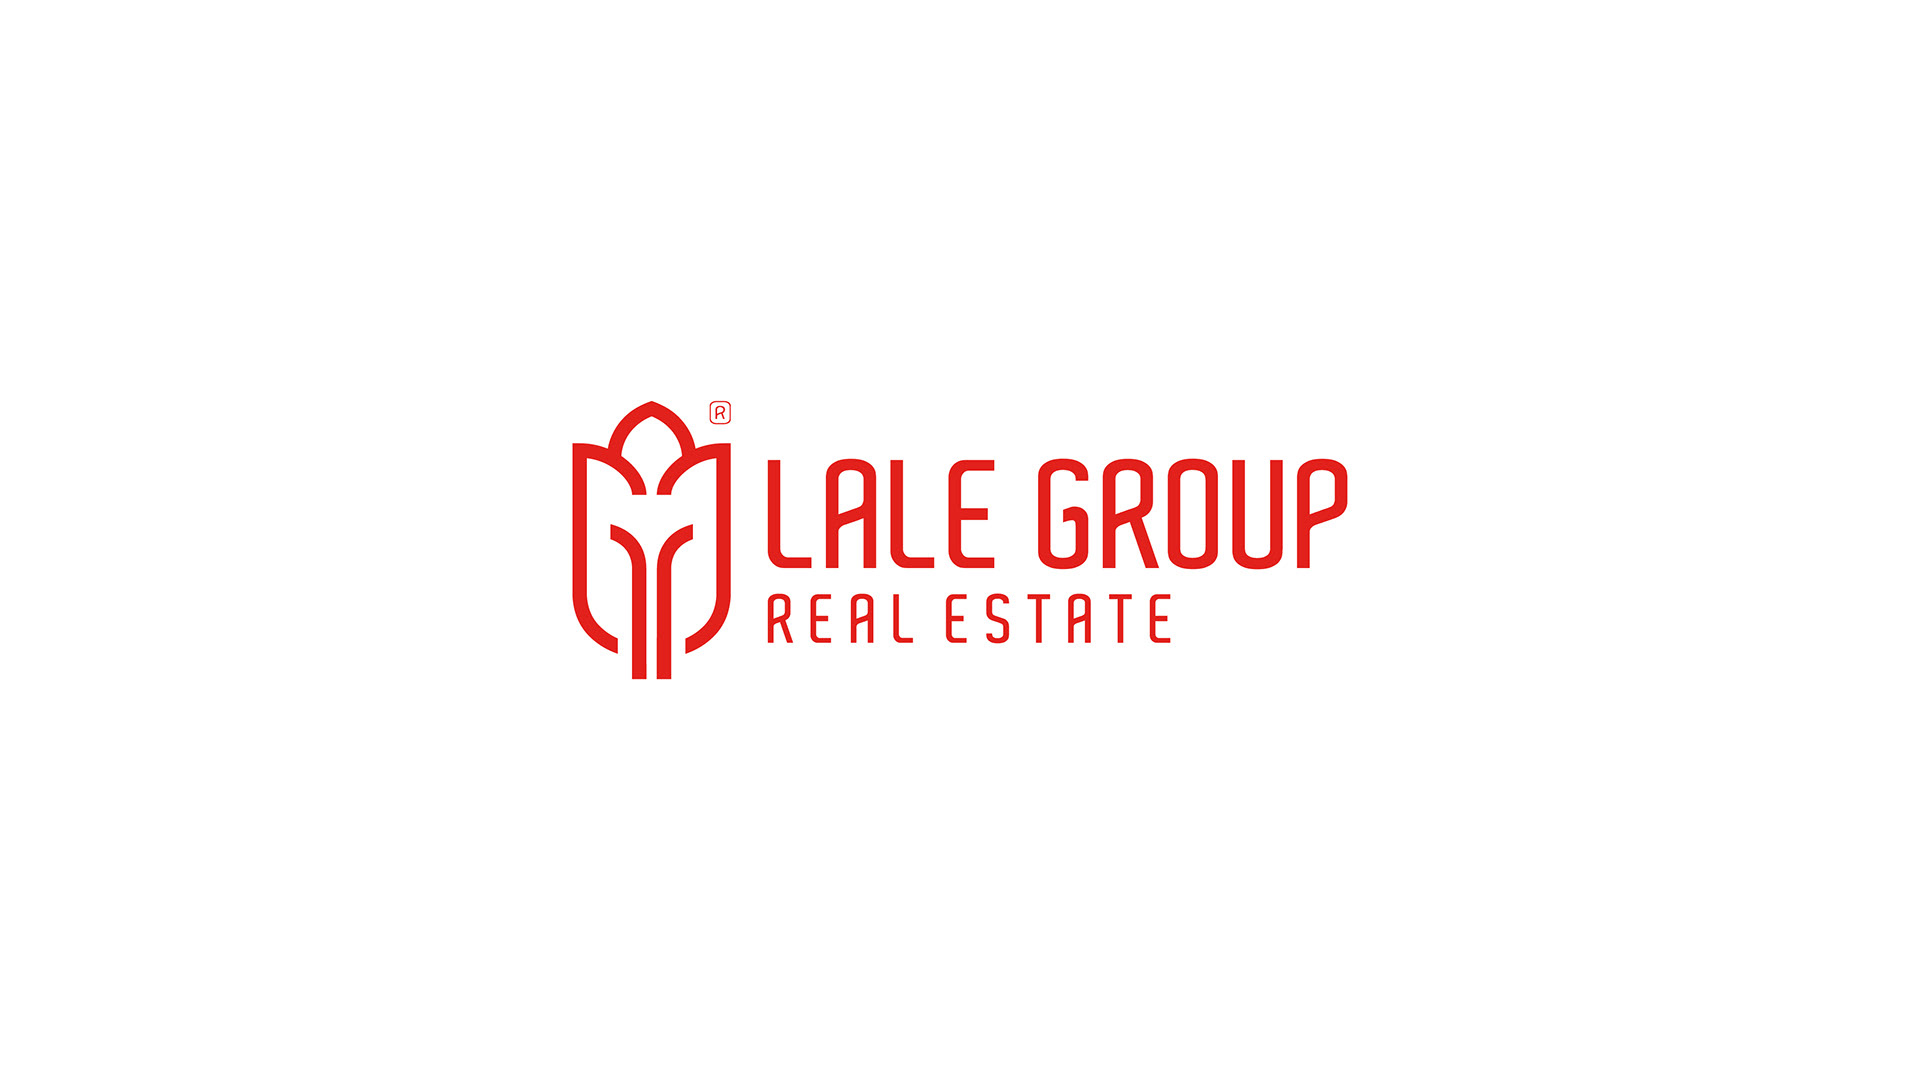 Lale Group